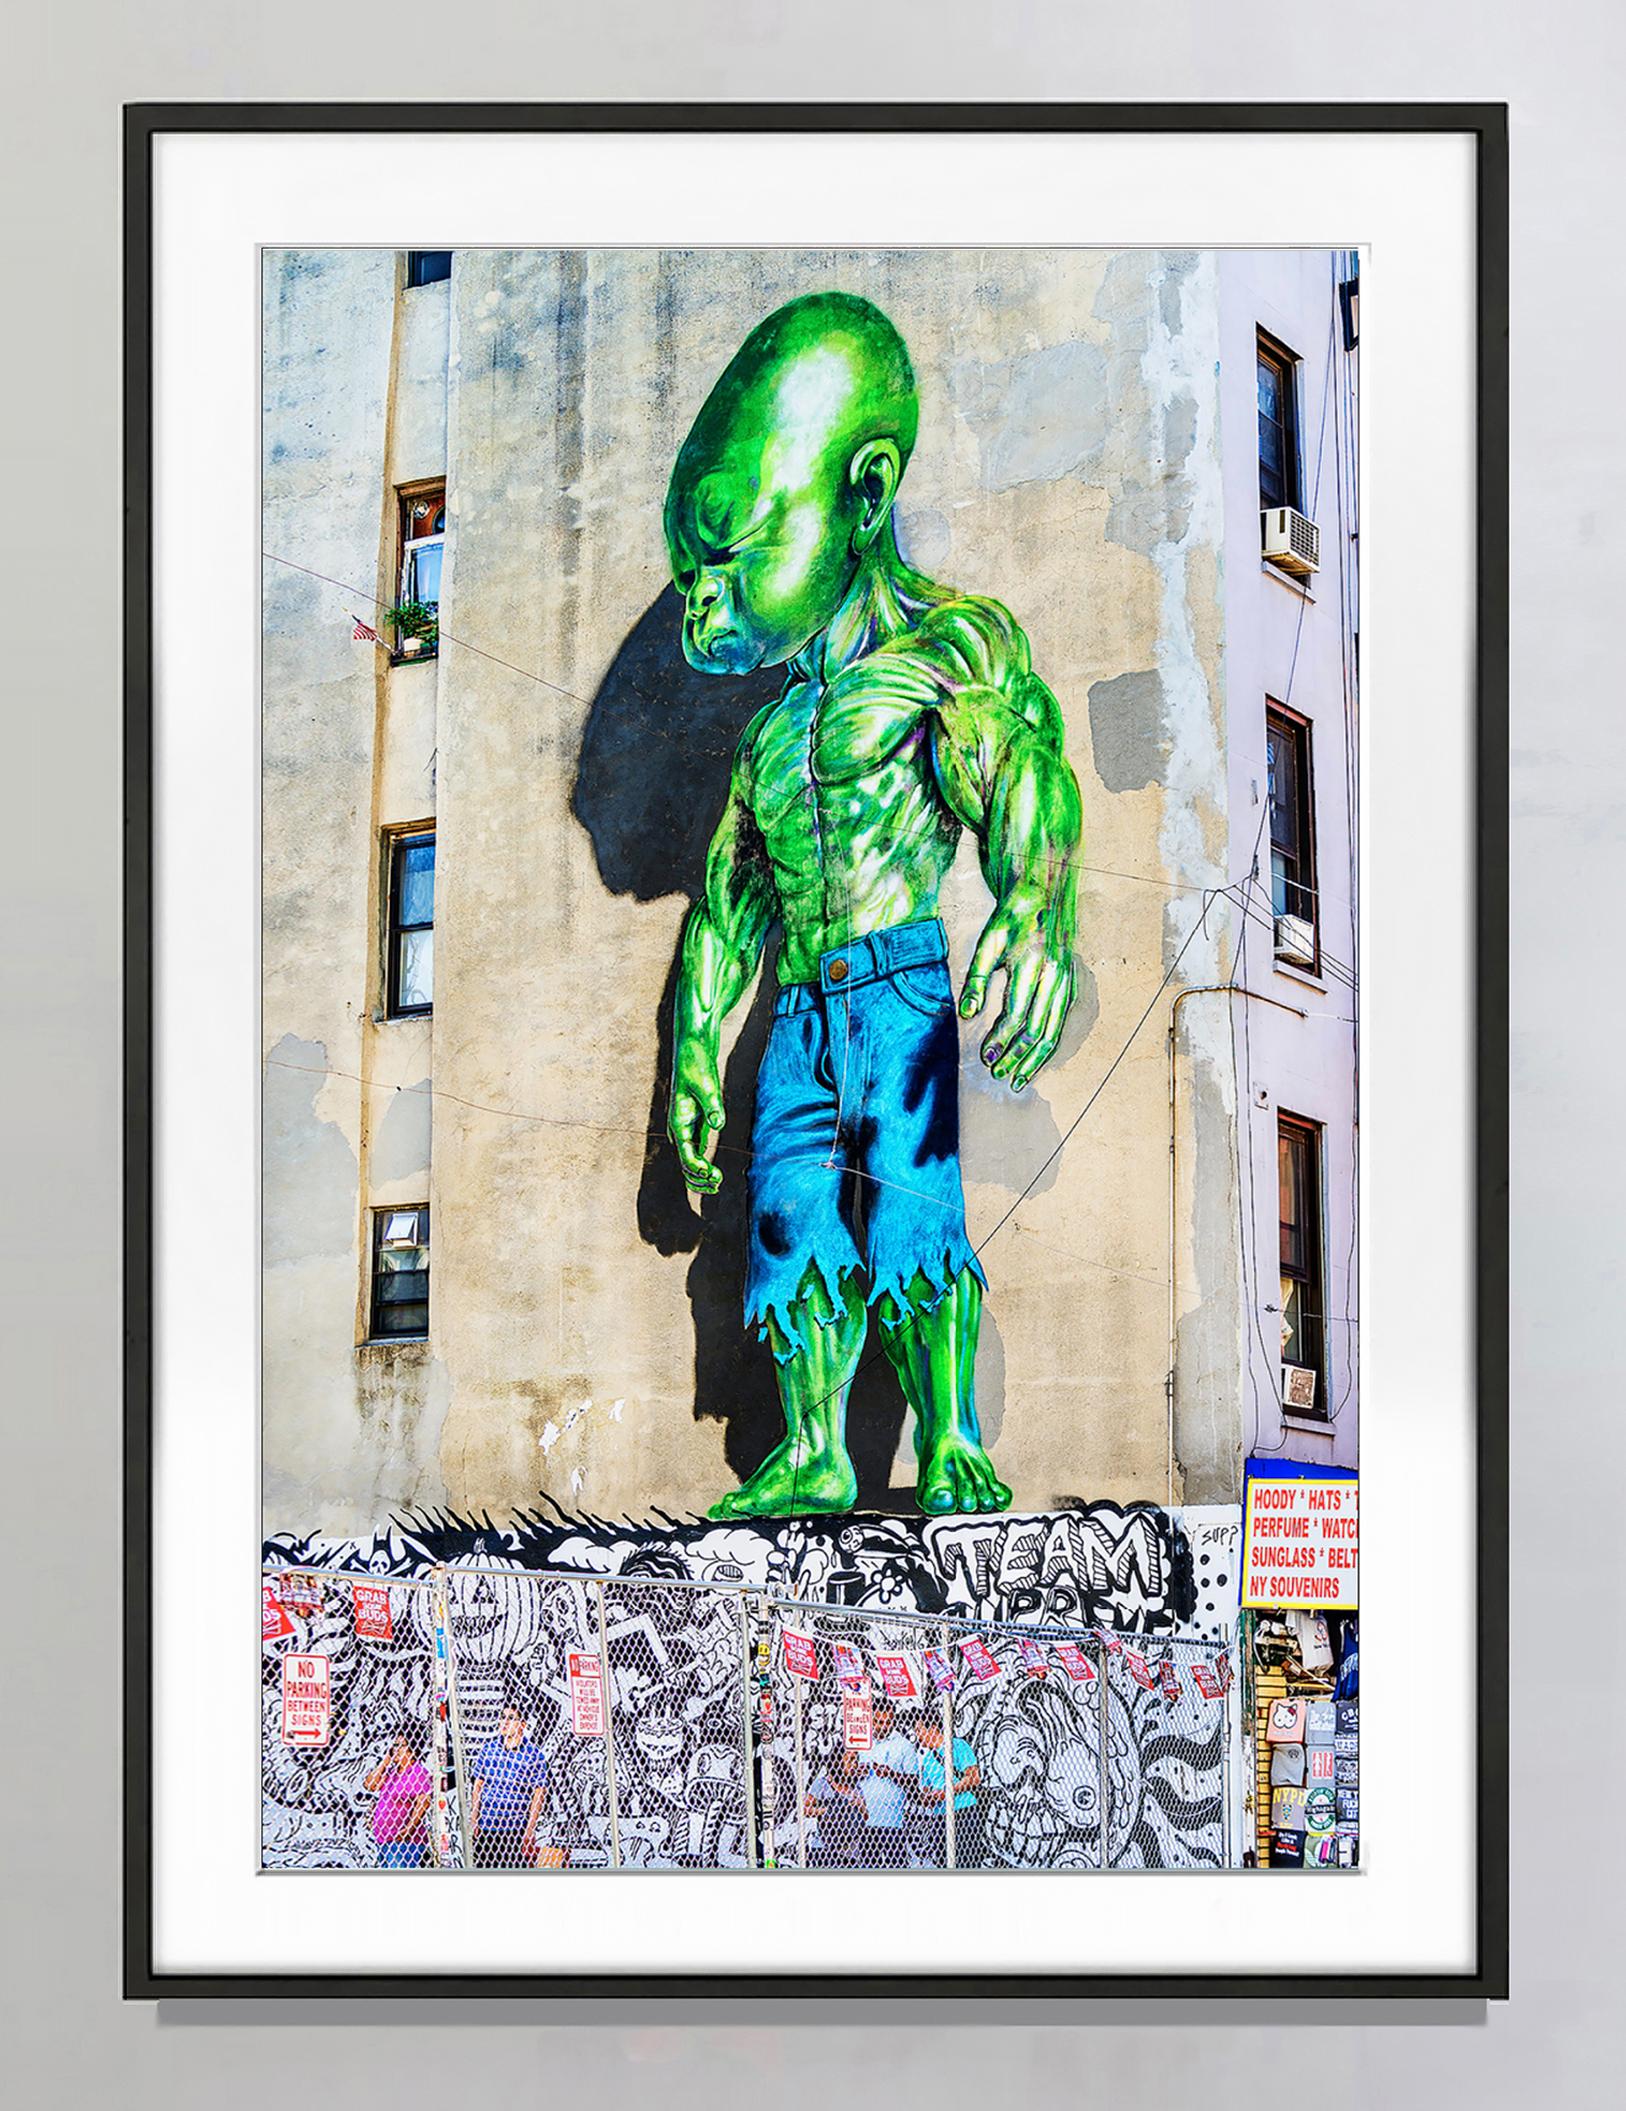 Graffiti Wall avec petit homme vert  - Art urbain Sci- fi - Photograph de Mitchell Funk